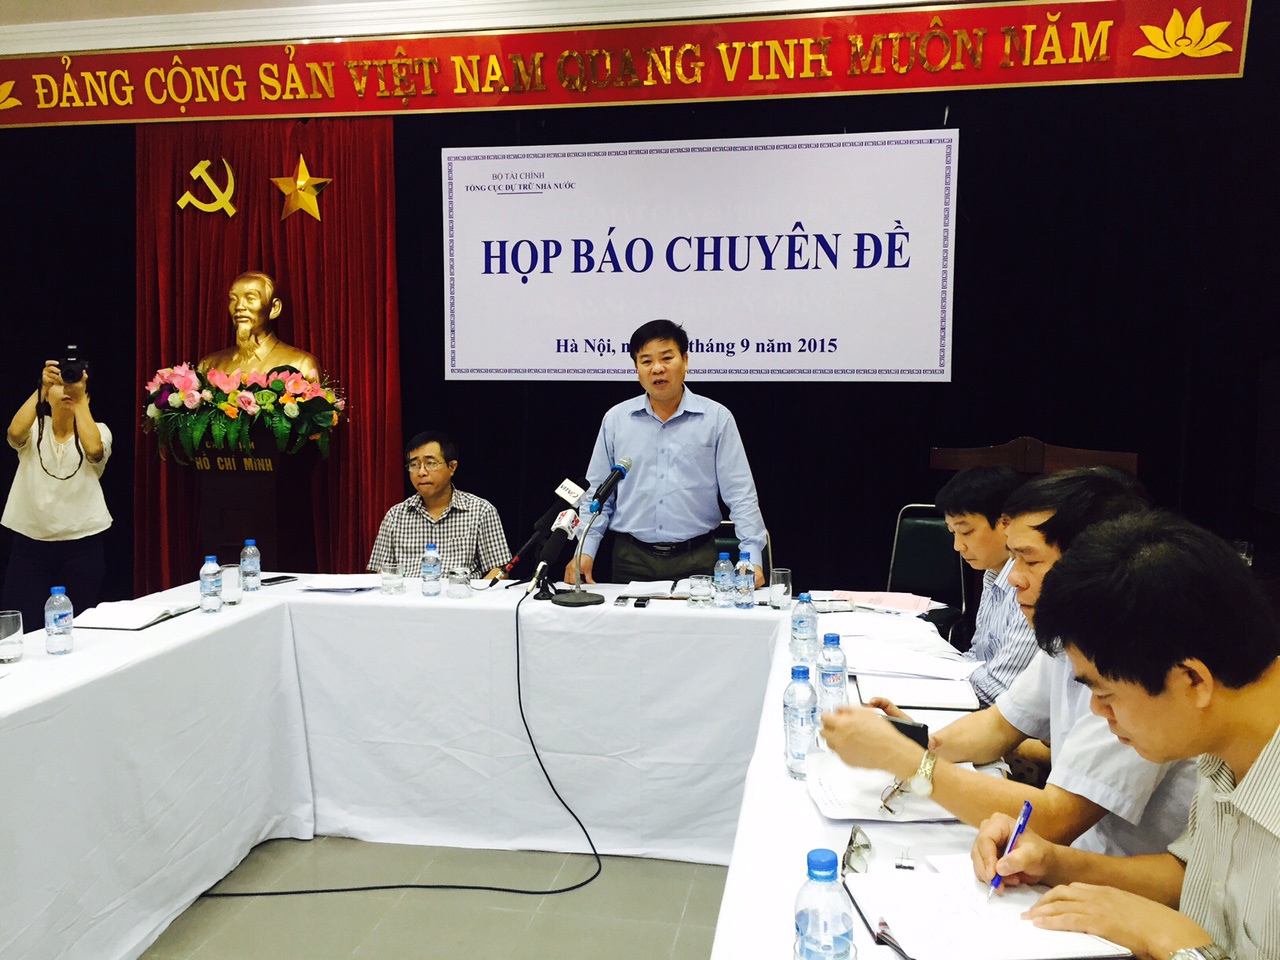 Ông Lê Văn Thời - Phó Tổng cục trưởng Tổng cục DTNN trao đổi với báo chí tại buổi họp báo ngày 25/9/2015.